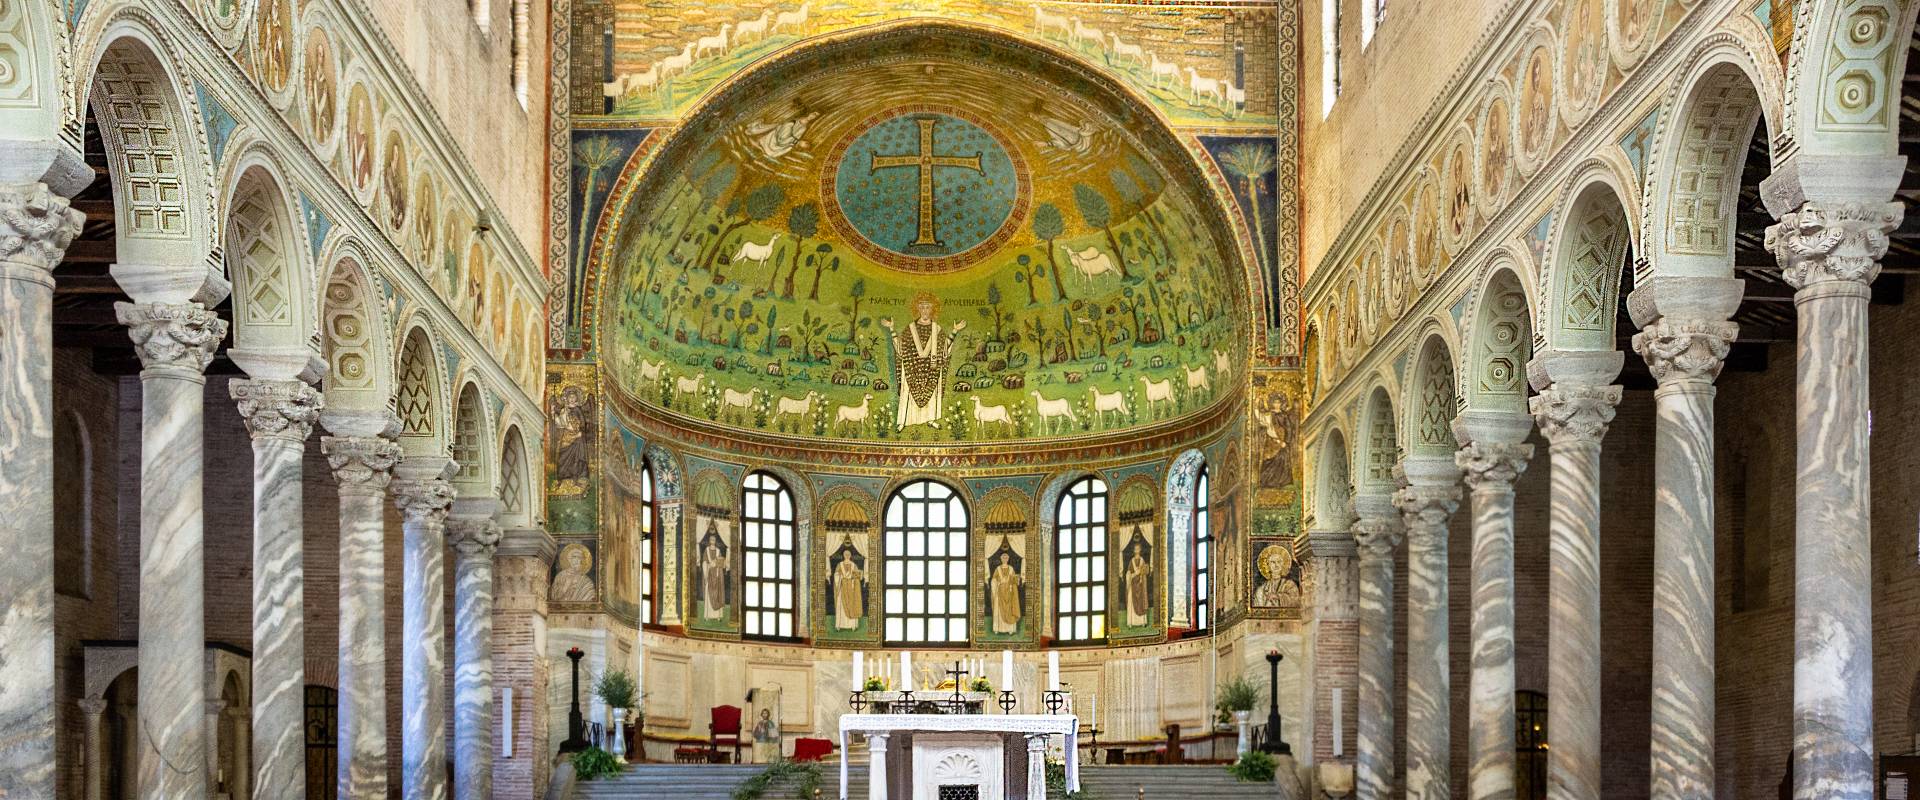 A015 Basilica di Sant'Apollinare in Classe - Ravenna - foto di Vanni Lazzari